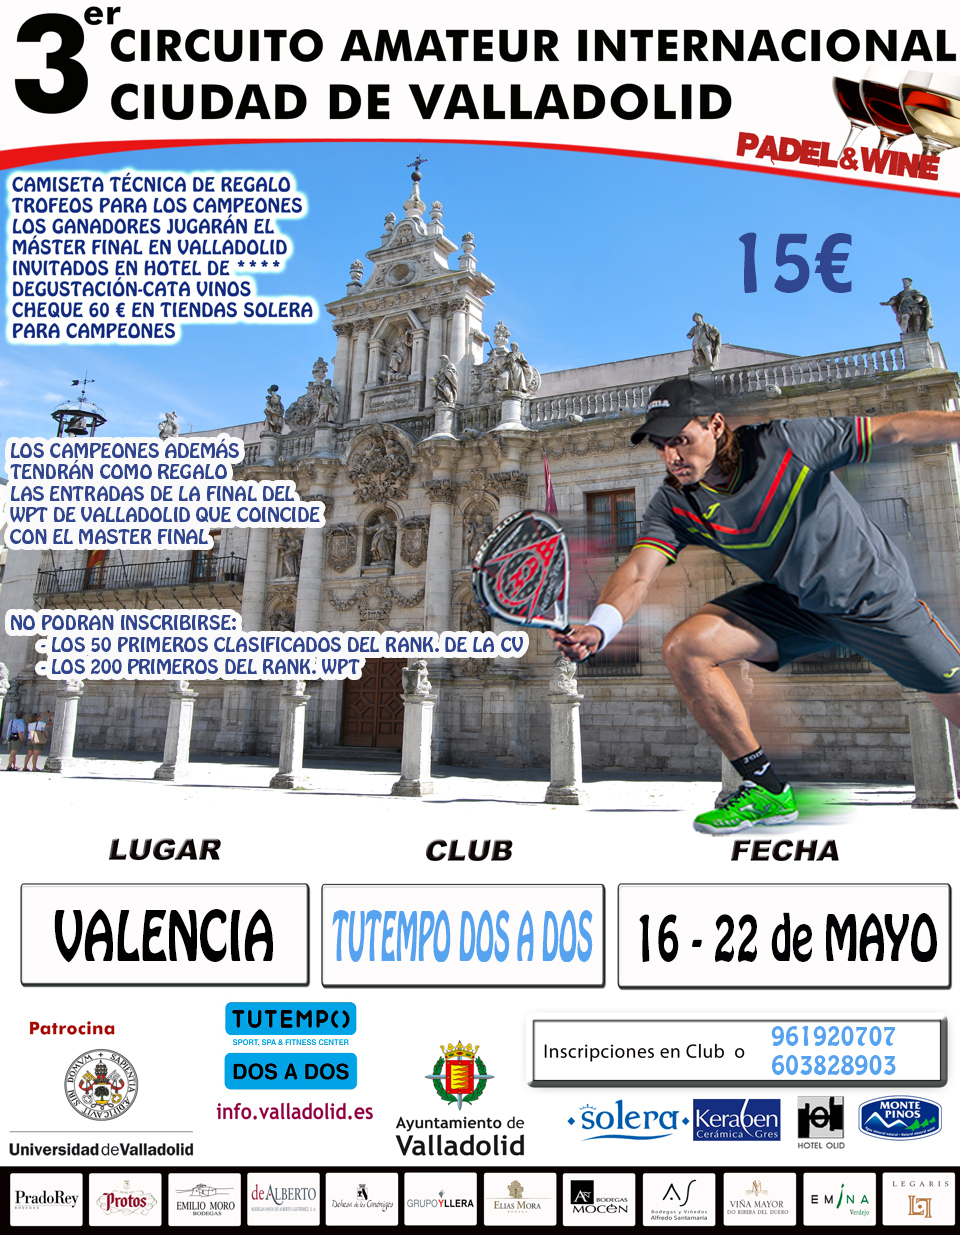 3er Circuito Amateur Internacional Ciudad de ‪Valladolid‬